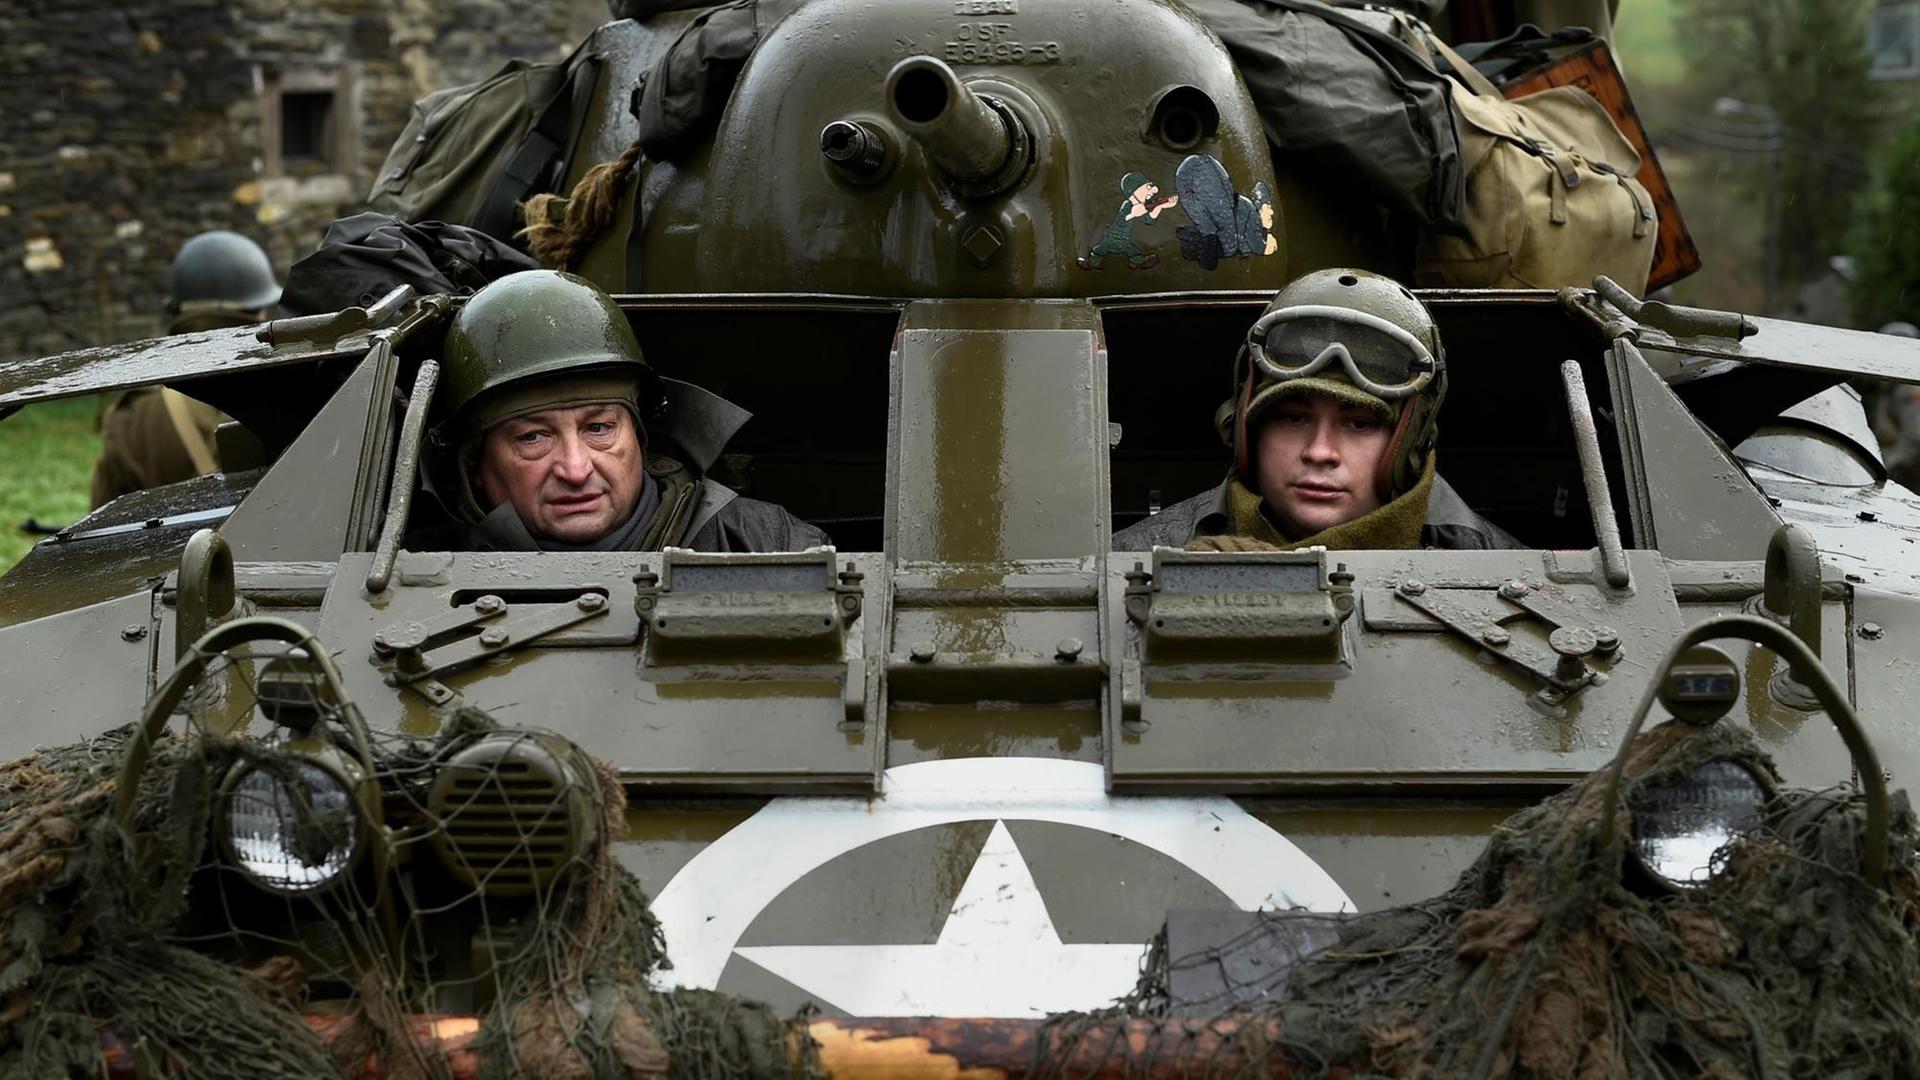 Schauspieler mit Uniformen aus dem 2. Weltkrieg in einem Panzer, den die USA und Großbritannien damals benutzten.